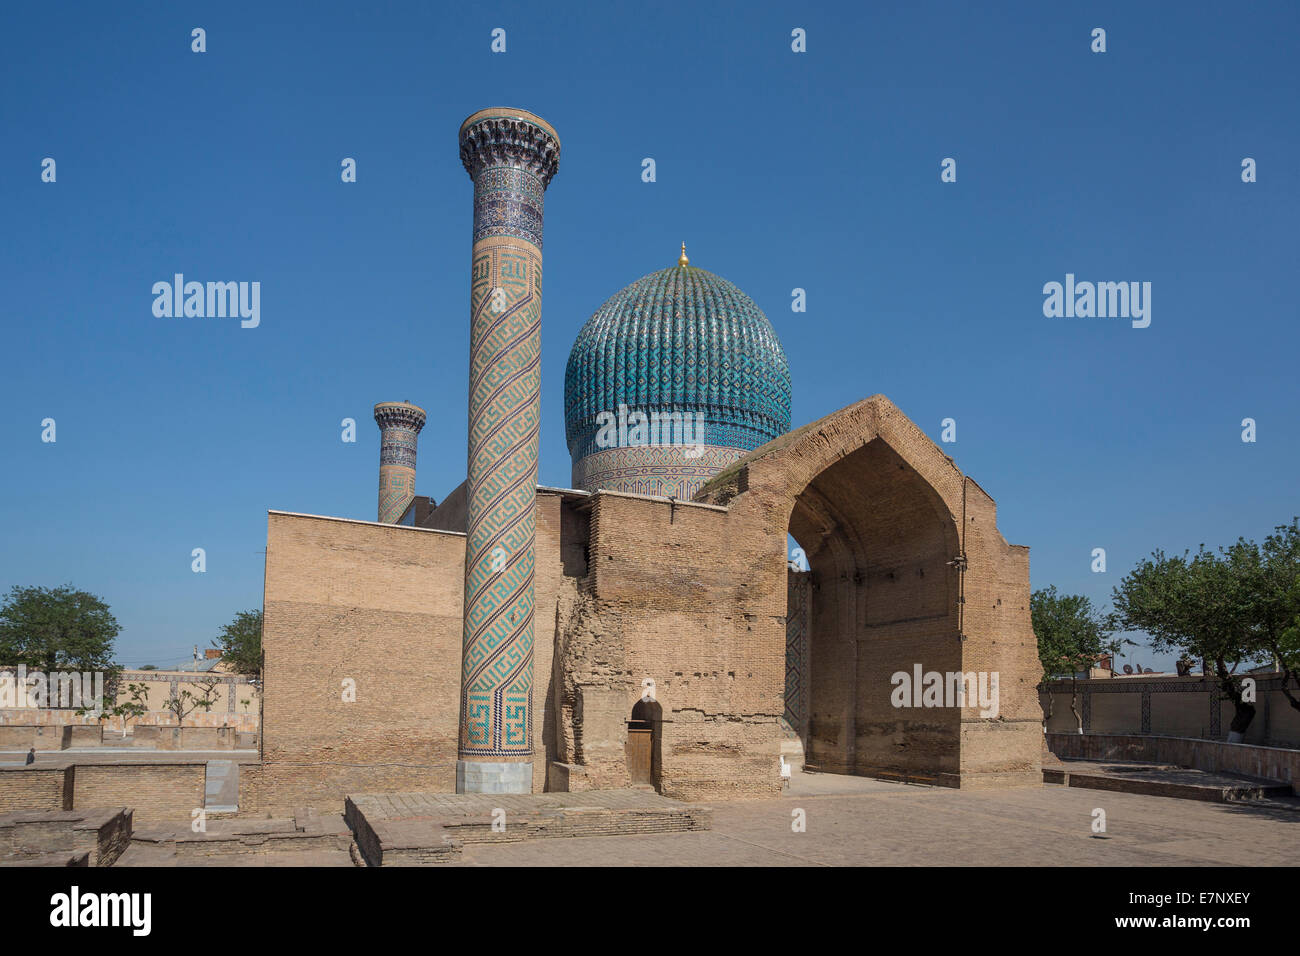 Welterbe, Amir Timur, Mausoleum, Samarkand, Stadt, Usbekistan, Zentralasien, Asien, Architektur, bunte, berühmt, Geschichte Stockfoto